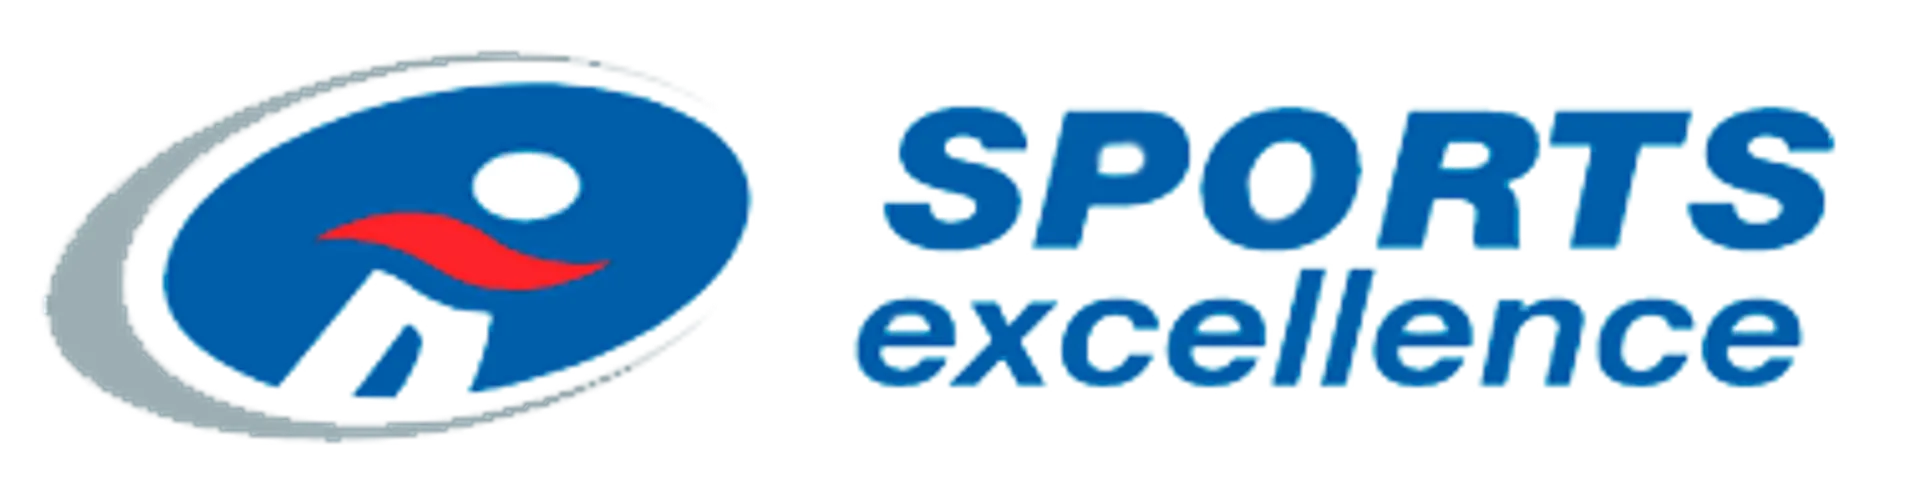 SPORTS EXCELLENCE logo de circulaire